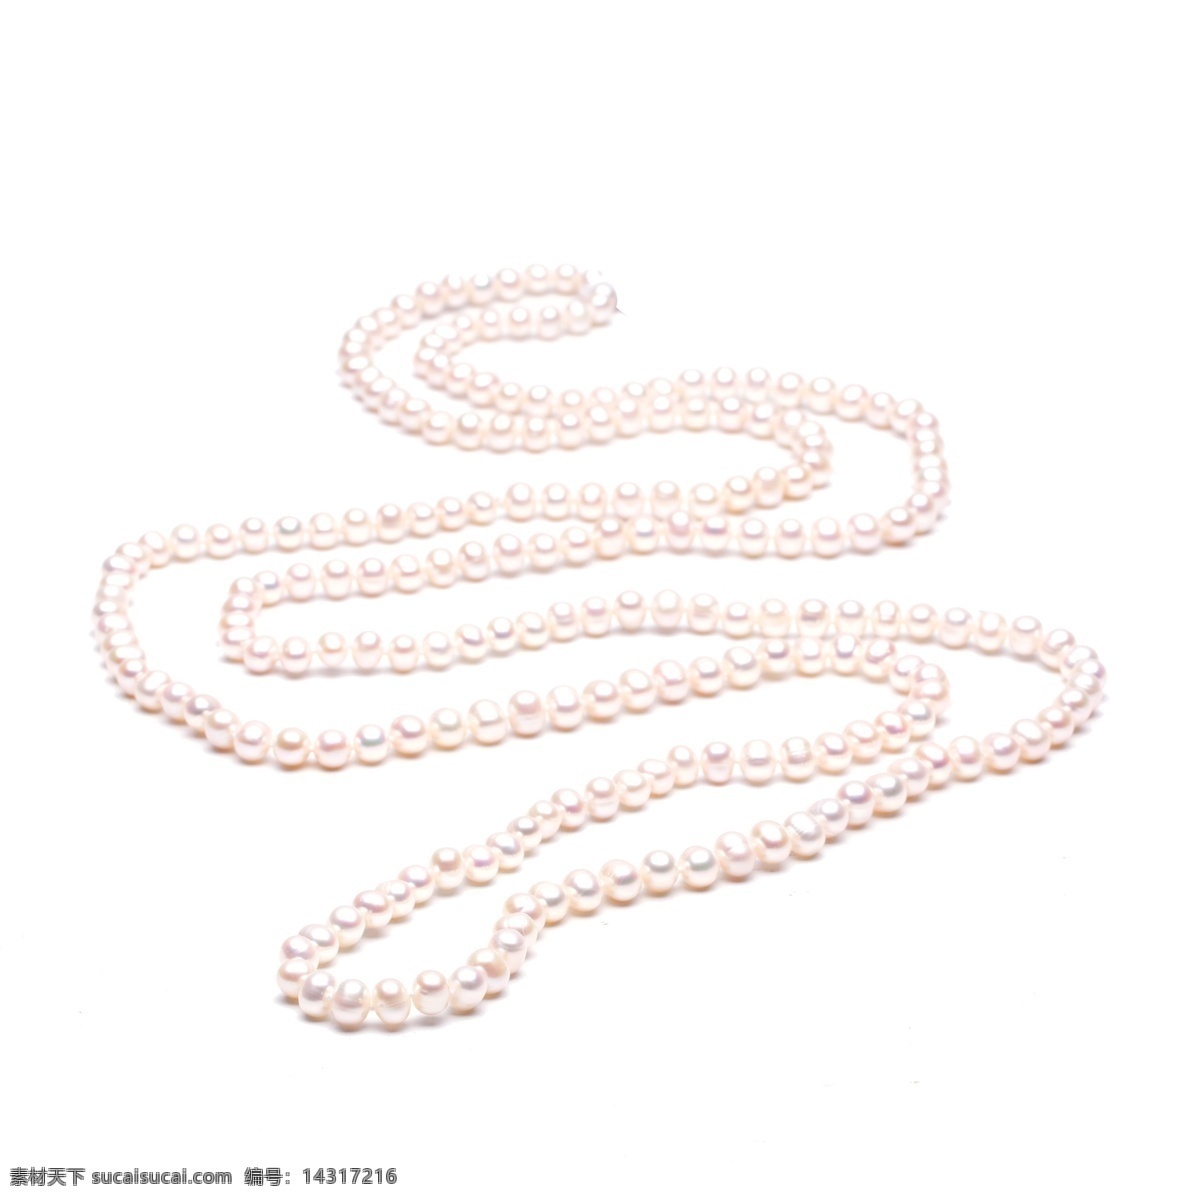 粉红色 珍珠 免 抠 图 珍珠项链 漂亮的项链 女士专用 装饰品 时尚珍珠 透明的珠子 粉红色的珍珠 免抠图